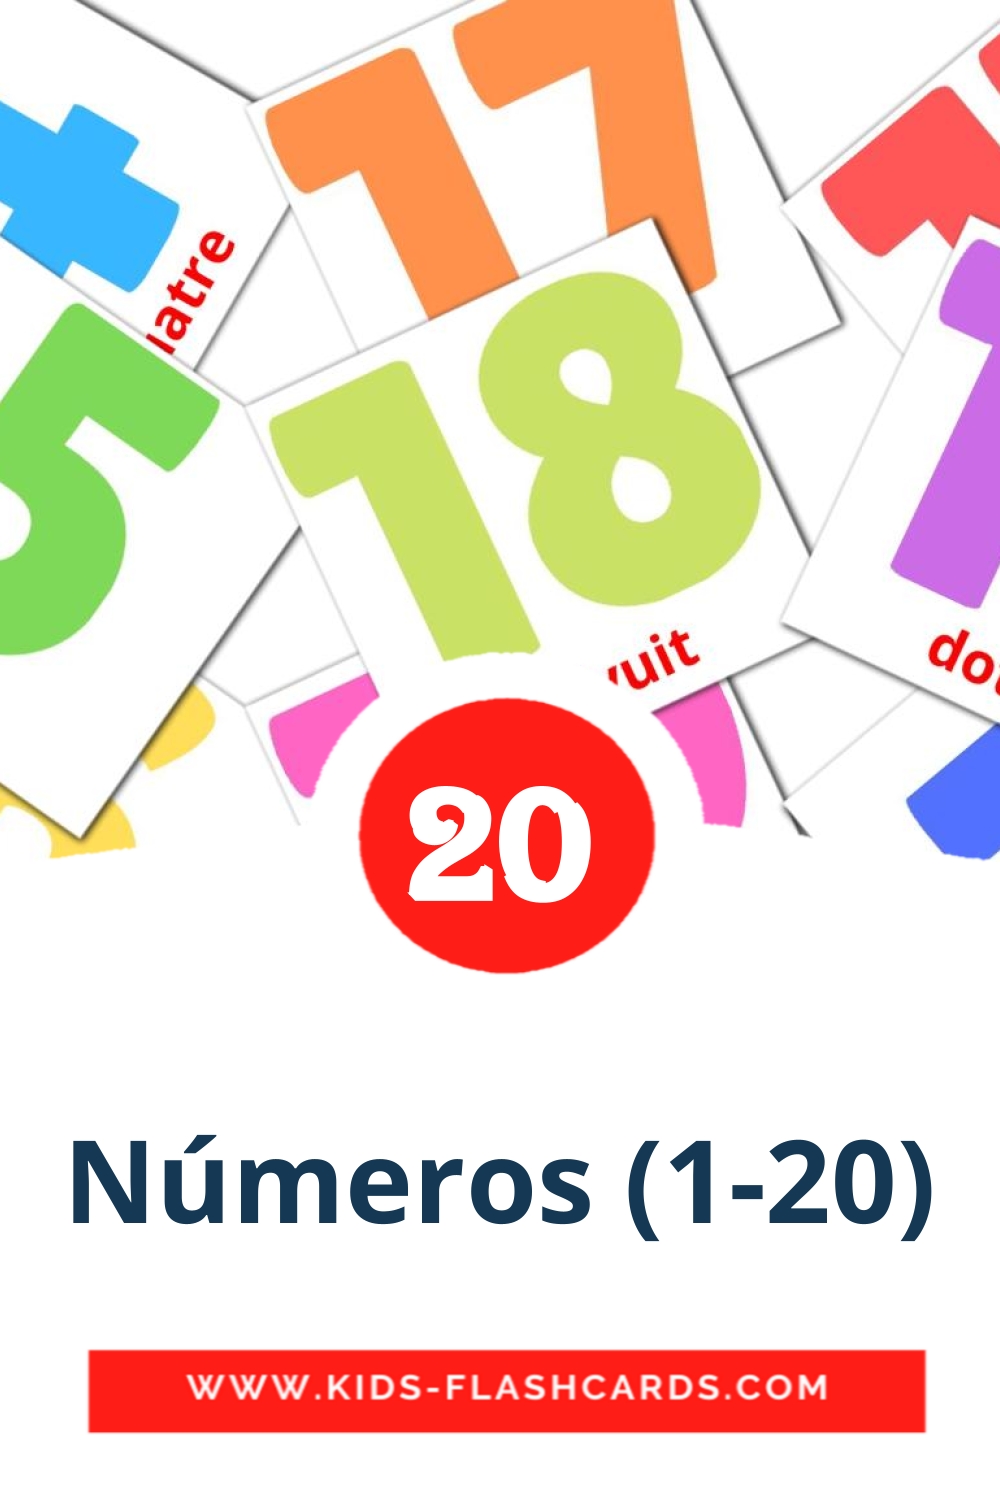 20 carte illustrate di Números (1-20) per la scuola materna in catalano